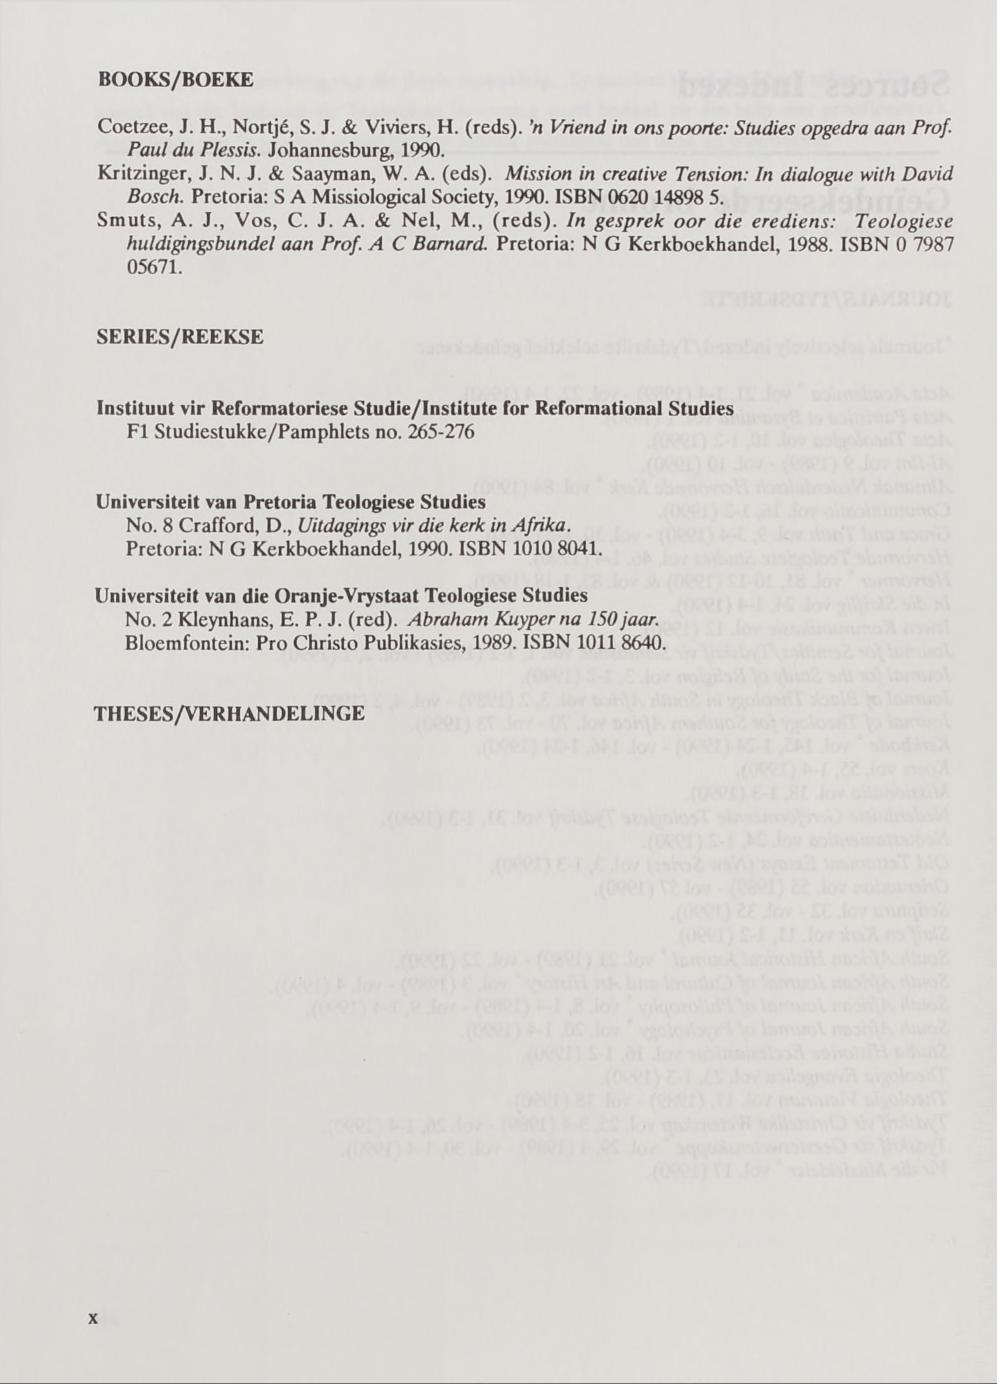 BOOKS/BOEKE Coetzee, J. H., Nortjé, S. J. & Viviers, H. (reds), n Vriend in ons poorte: Studies opgedra aan Prof Paul du Plessis. Johannesburg, 1990. Kritzinger, J. N. J. & Saayman, W. A. (eds).